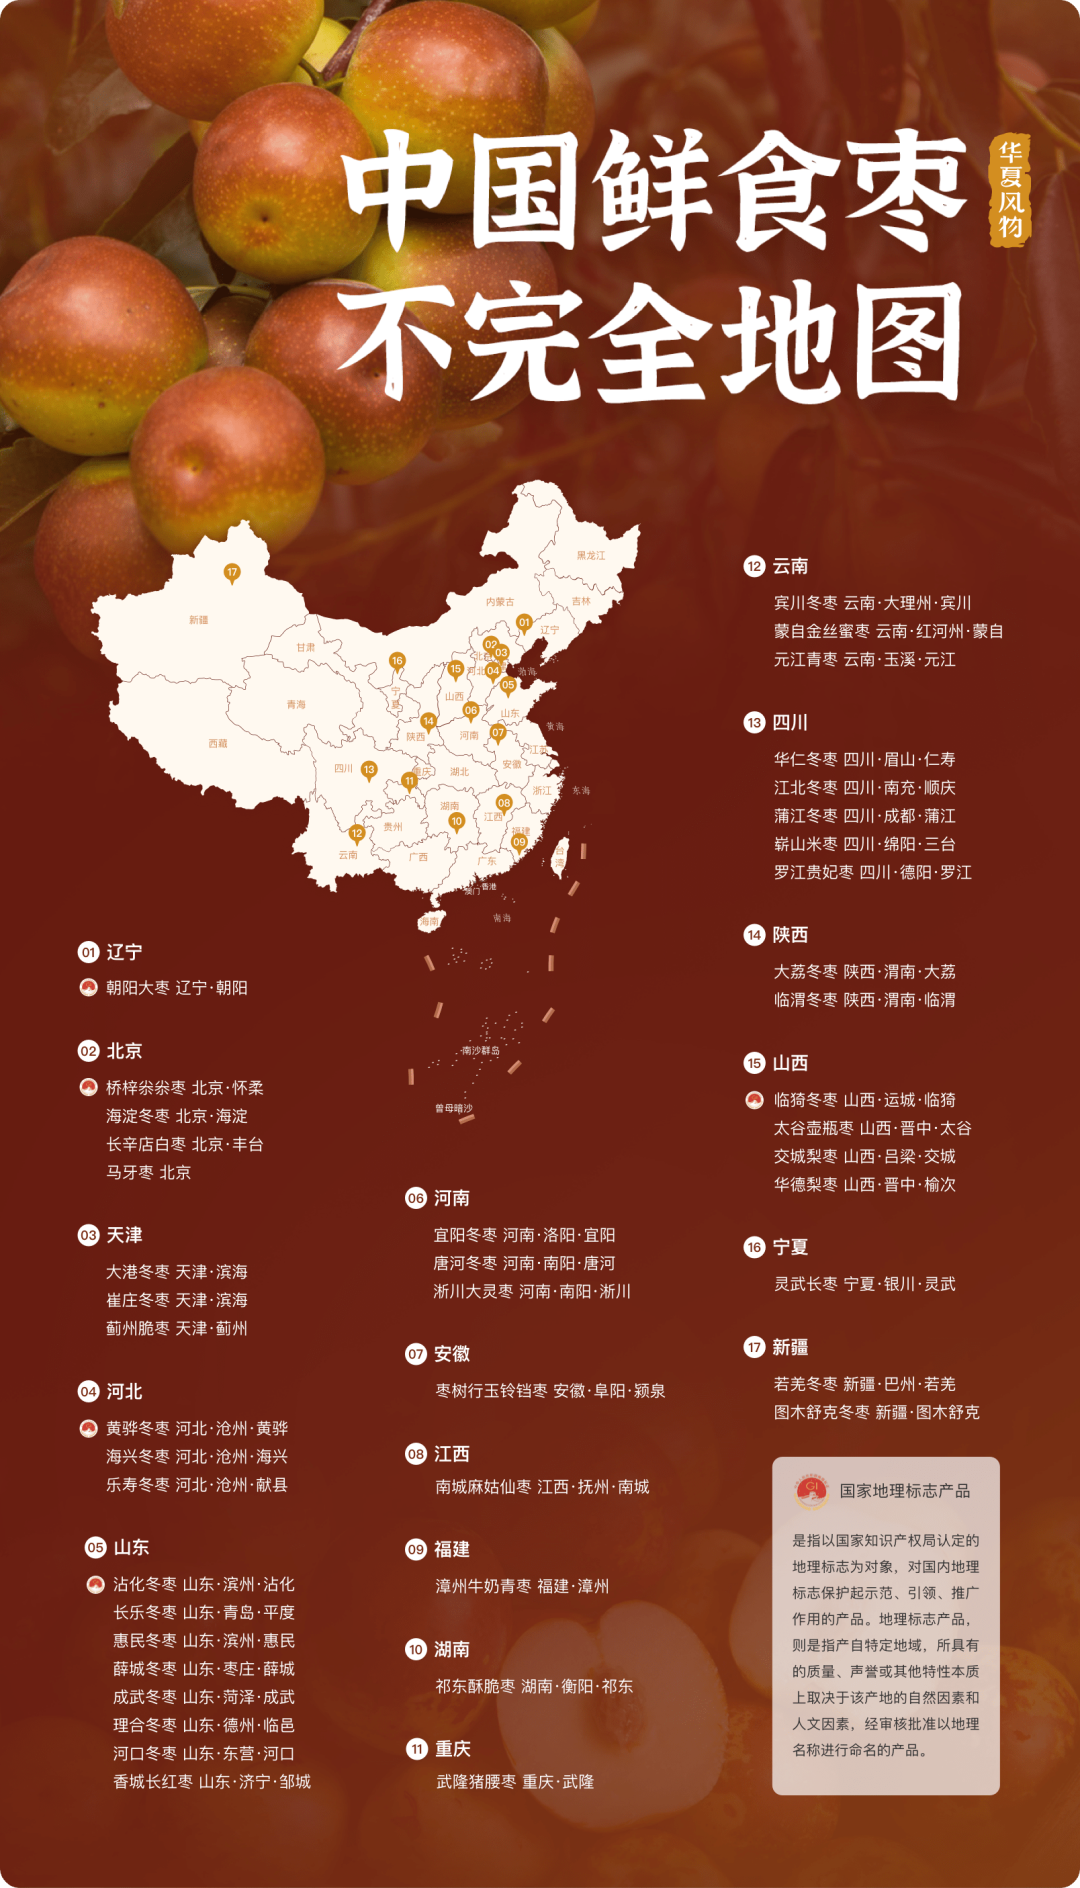 中国鲜食枣不完全地图 ©华夏风物